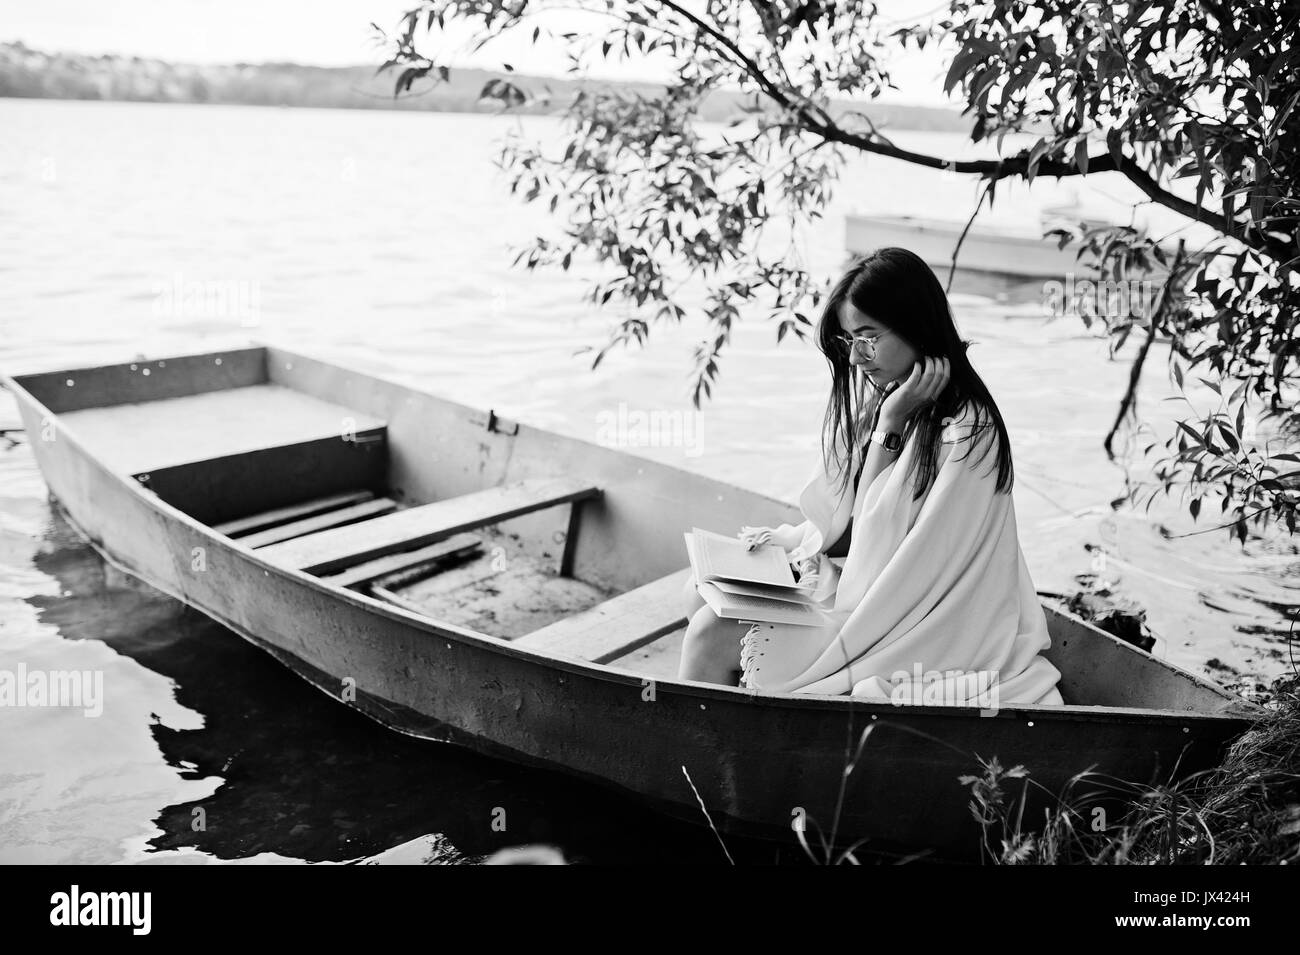 Ritratto di una donna attraente vestita di nero a pois, vestito scialle bianco e degli occhiali per leggere un libro in una barca sul lago. Foto in bianco e nero. Foto Stock